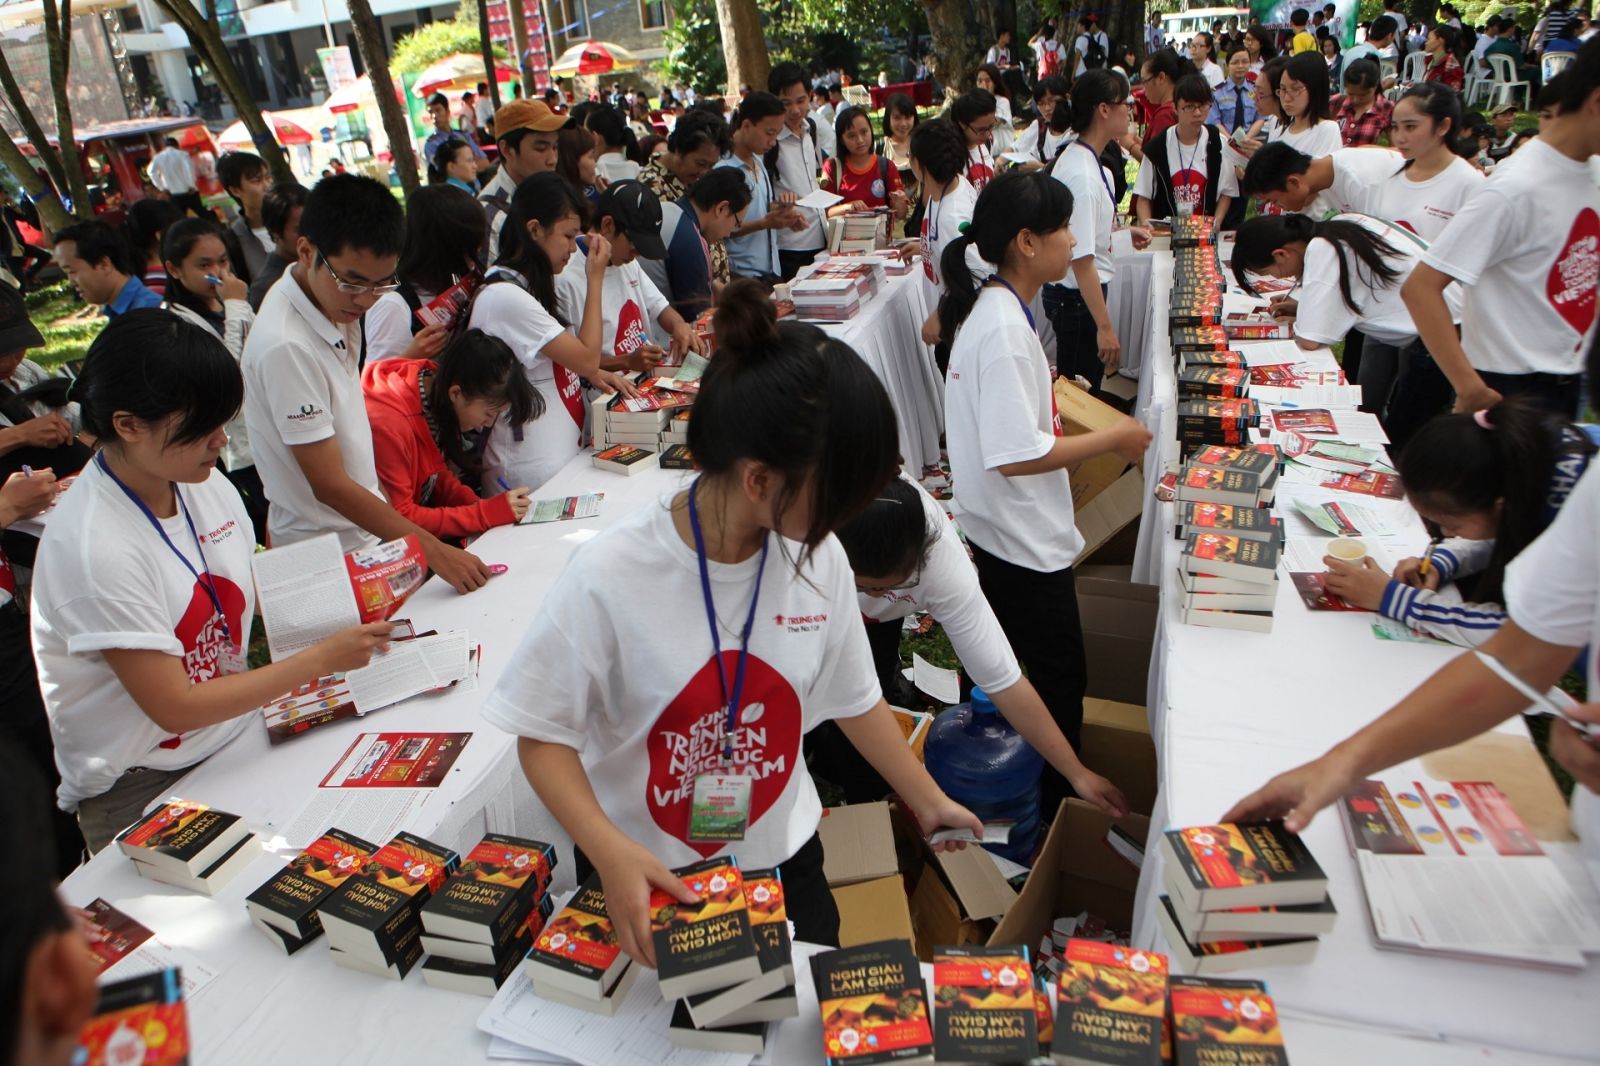 Hàng ngàn cuốn sách đầu tiên của Tủ sách nền tảng đổi đời "Nghĩ giàu làm giàu" được trao tặng cho thế hệ trẻ trong Ngày hội Sáng tạo vì khát vọng Việt tại Dinh Thống Nhất vào ngày kỷ niệm 9 năm ra mắt G7 (23.11.2012)